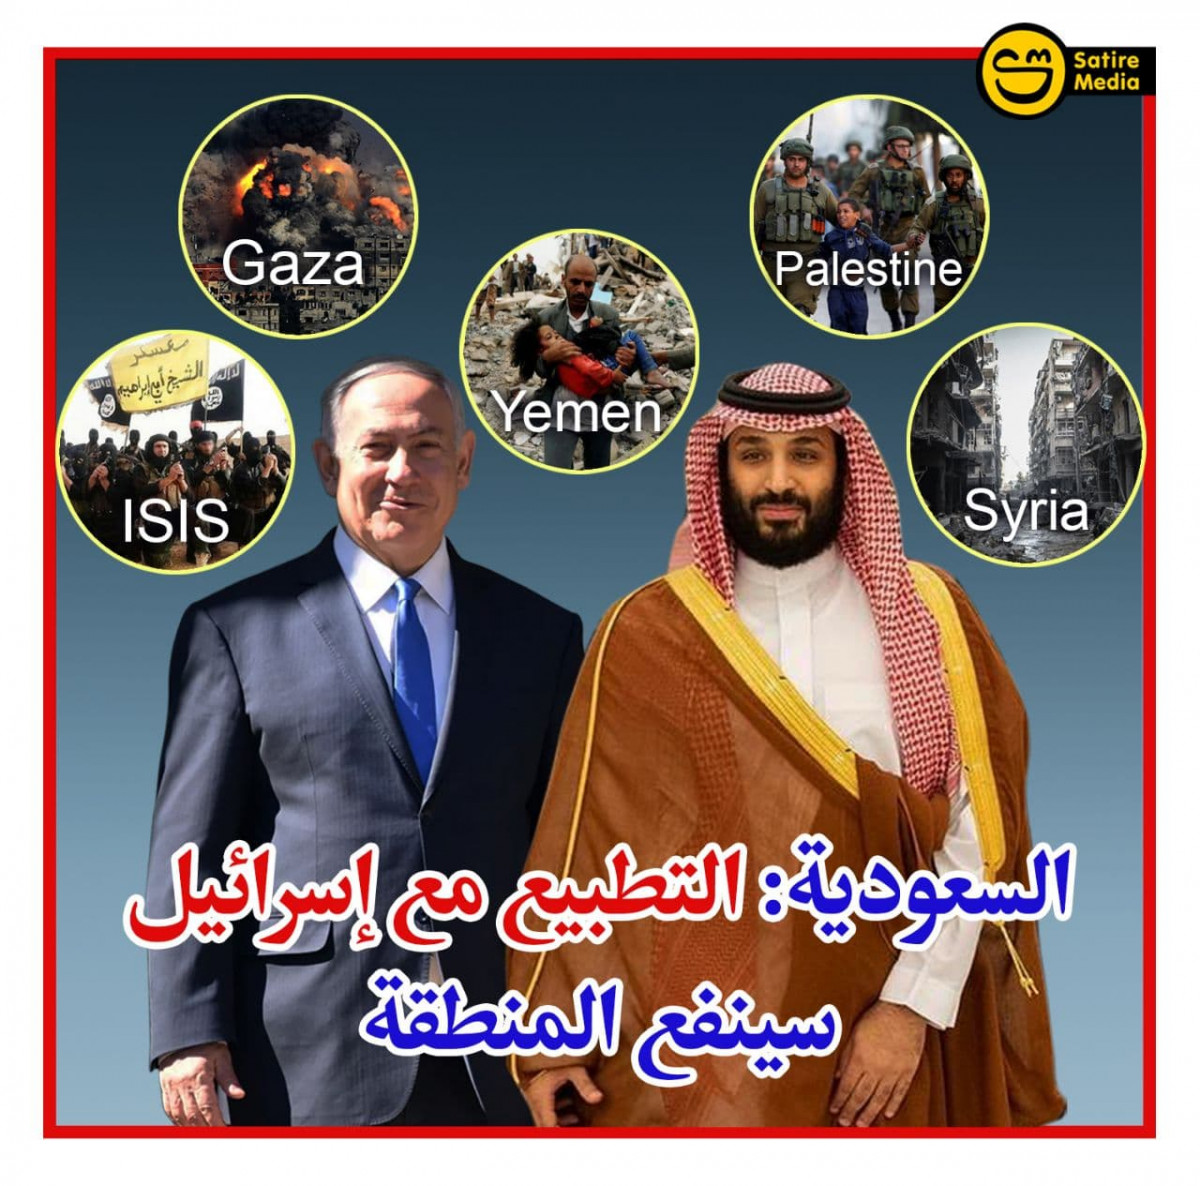 السعودية: التطبيع مع إسرائيل سينفع المنطقة